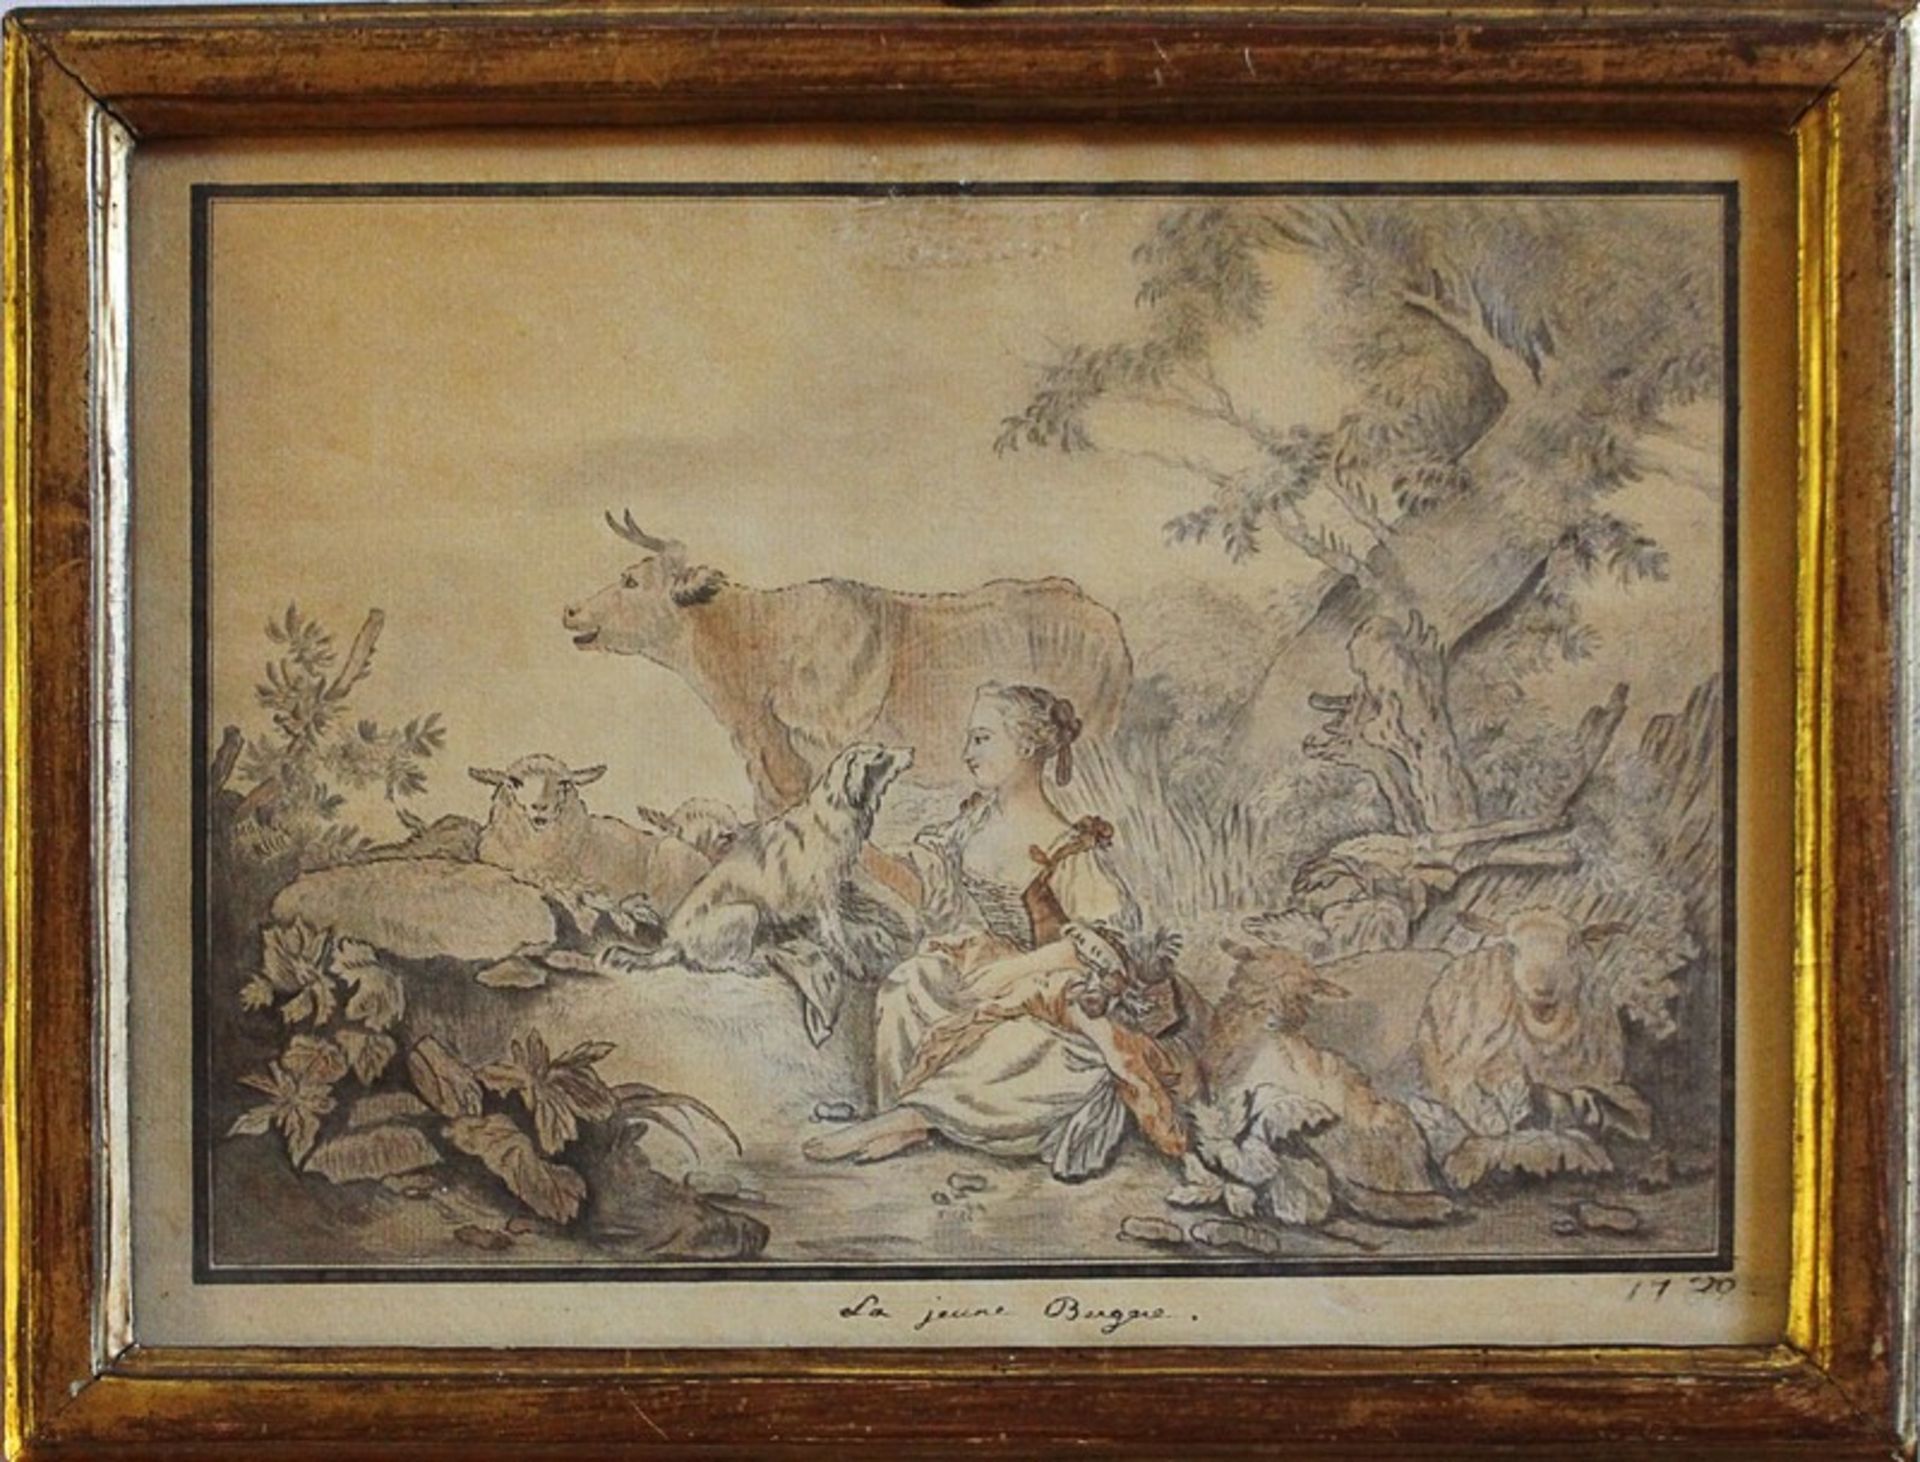 Huet, Jean-Baptistzugeschr., 1750 Lüttich-1802 Paris, bez. "La jeune Bergae", pastorale Szene m.